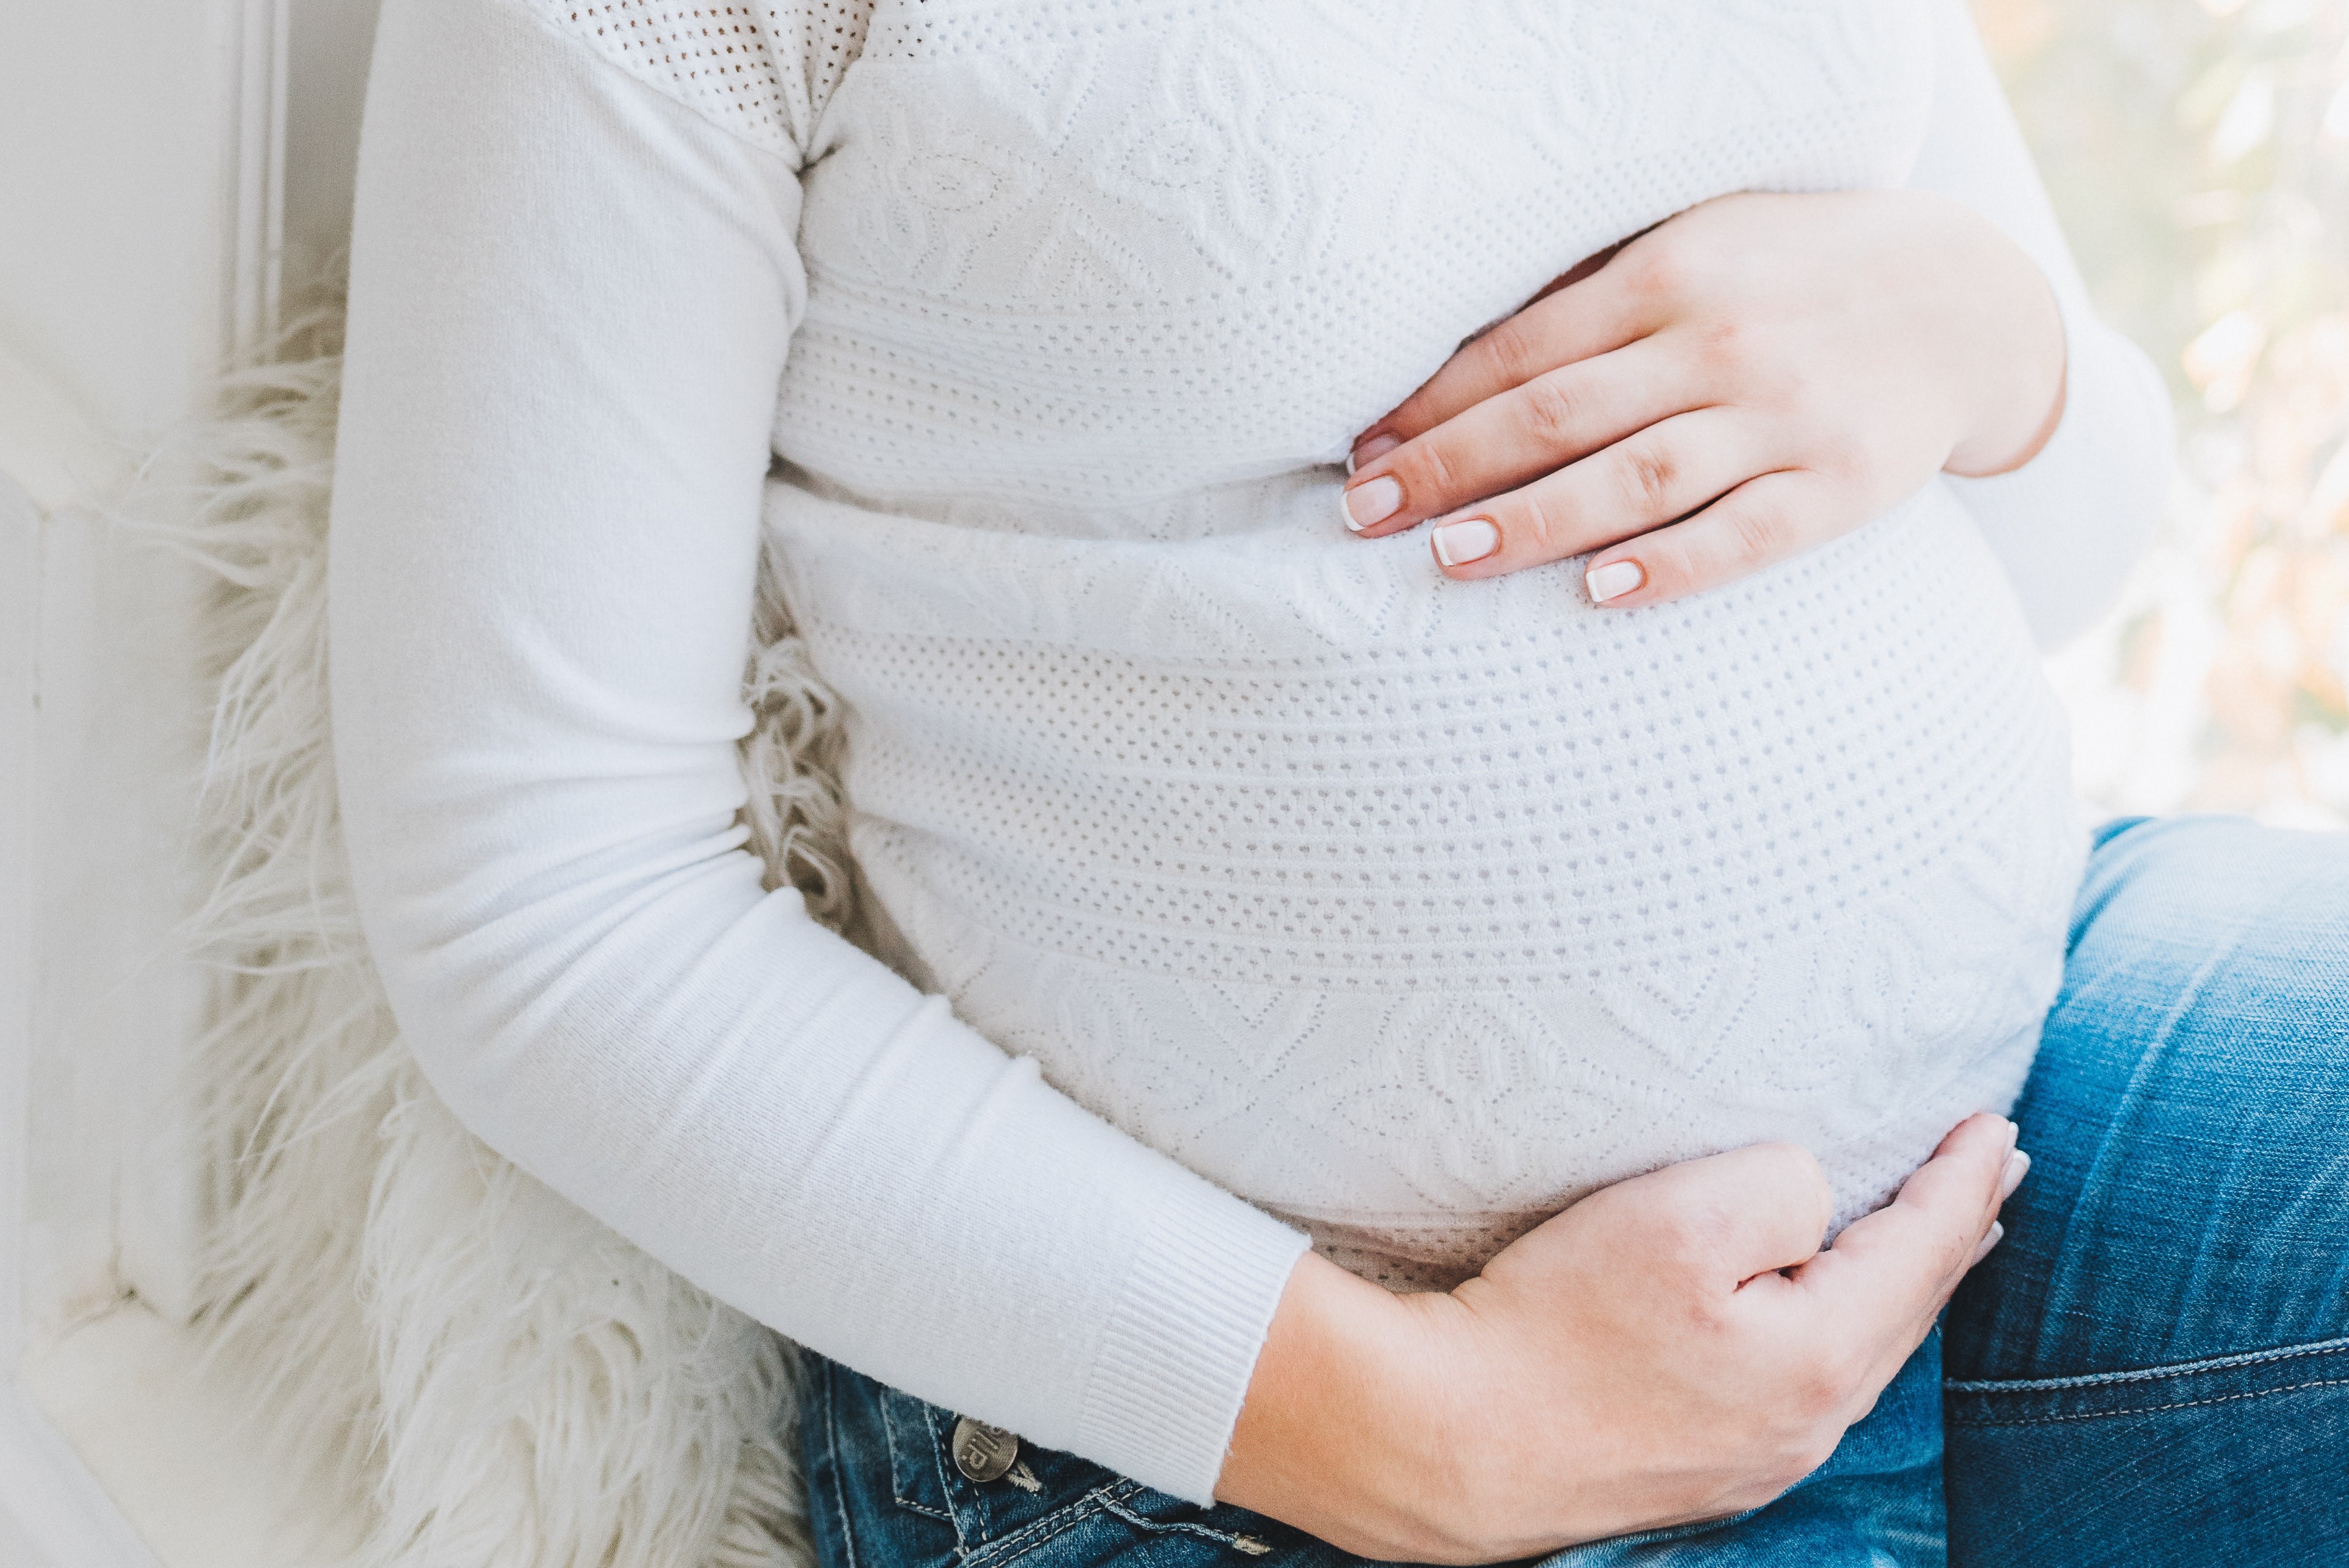 Transmissão de Covid-19 entre grávida e bebê é incomum, segundo estudo (Foto: Unsplash)